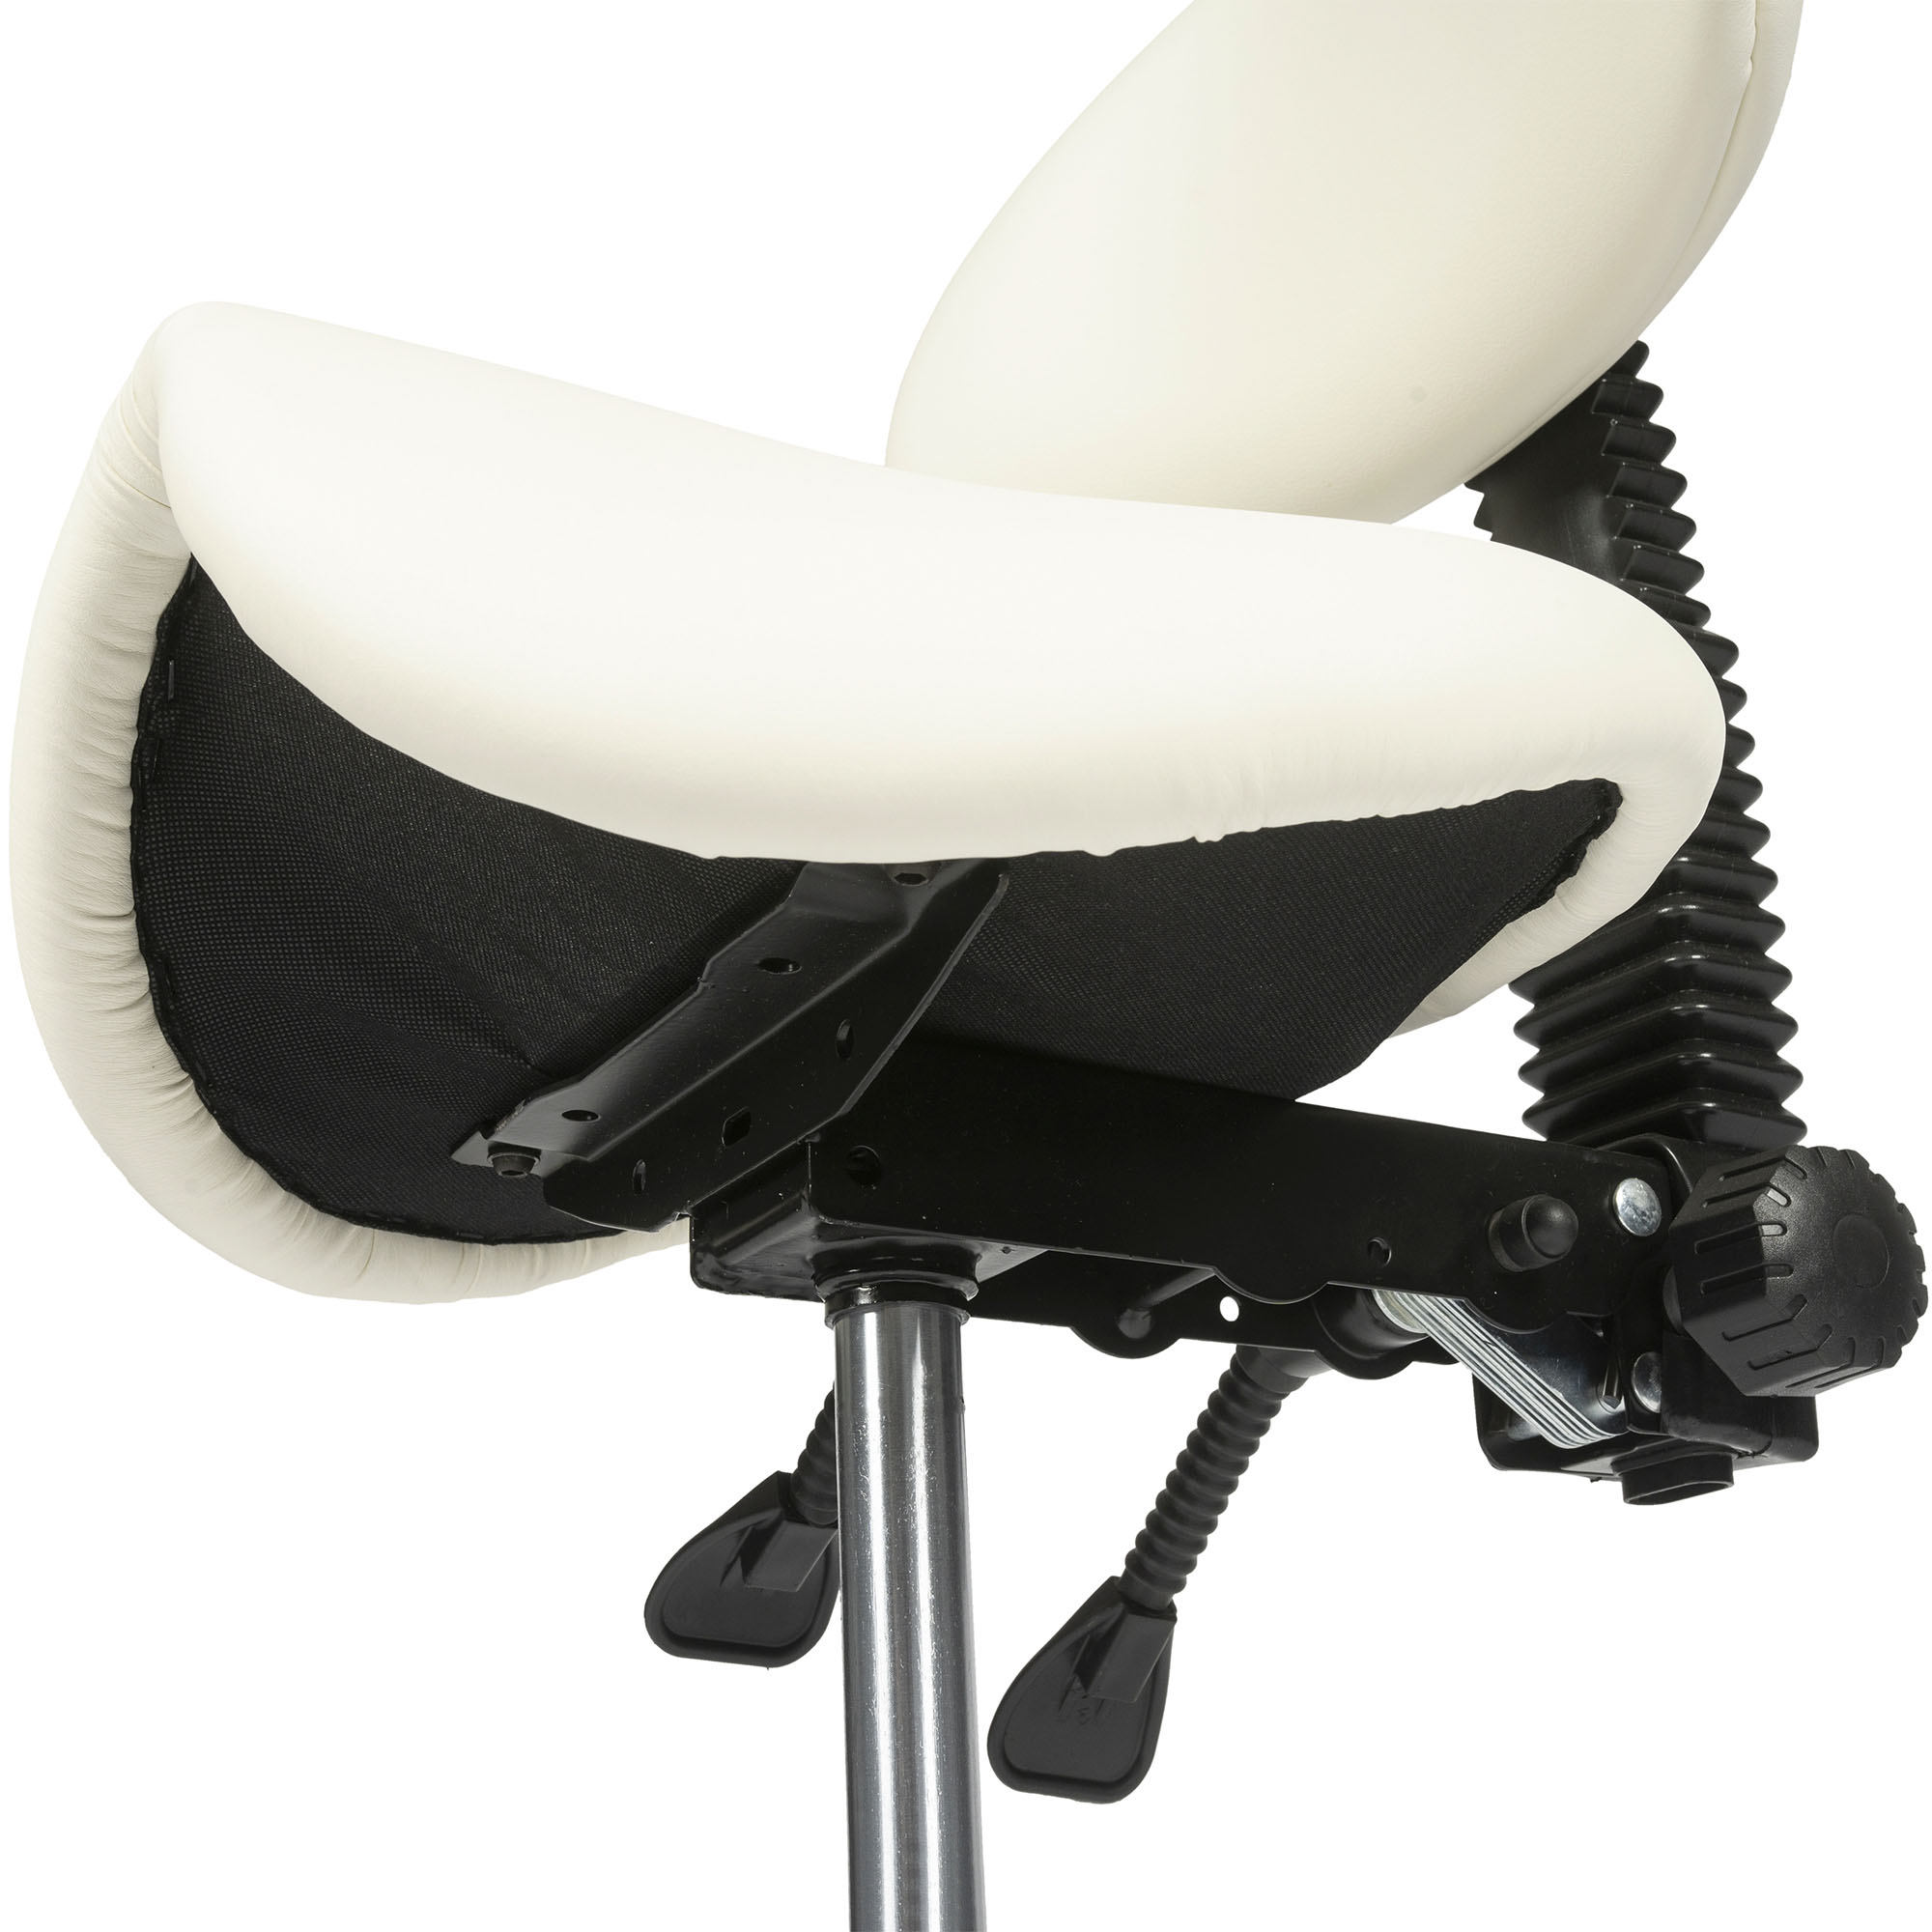 dunimed ergonomic saddle stool with backrest white under part view